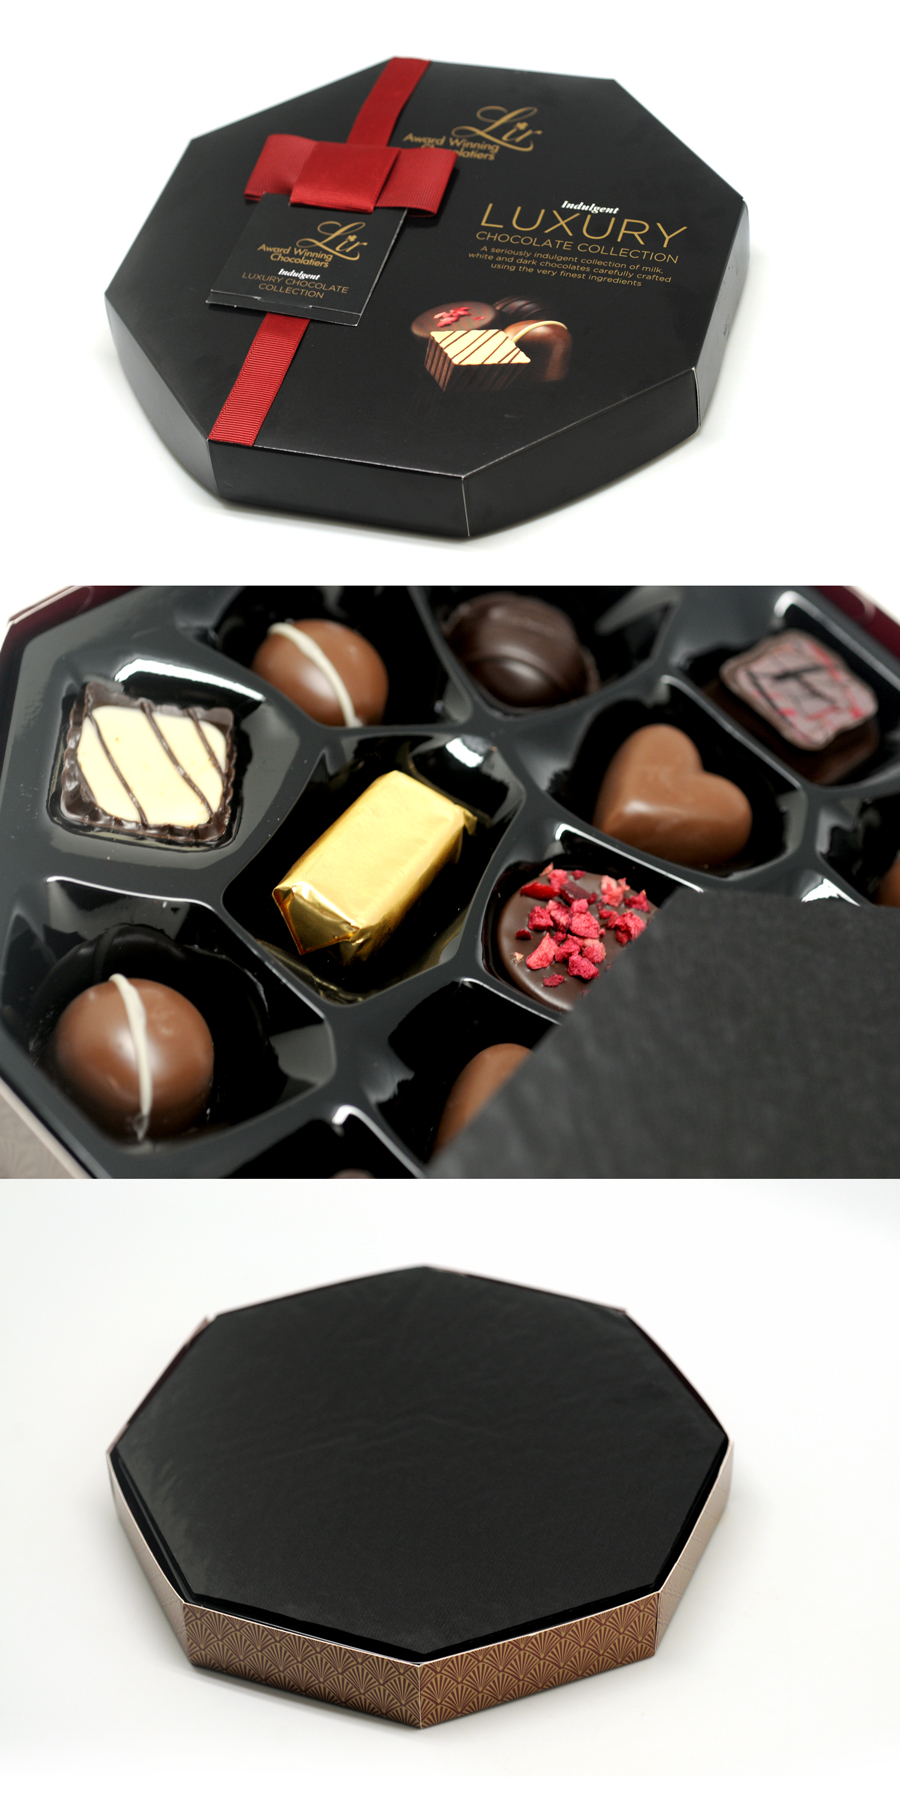 hexagonal-shape Chocolate box